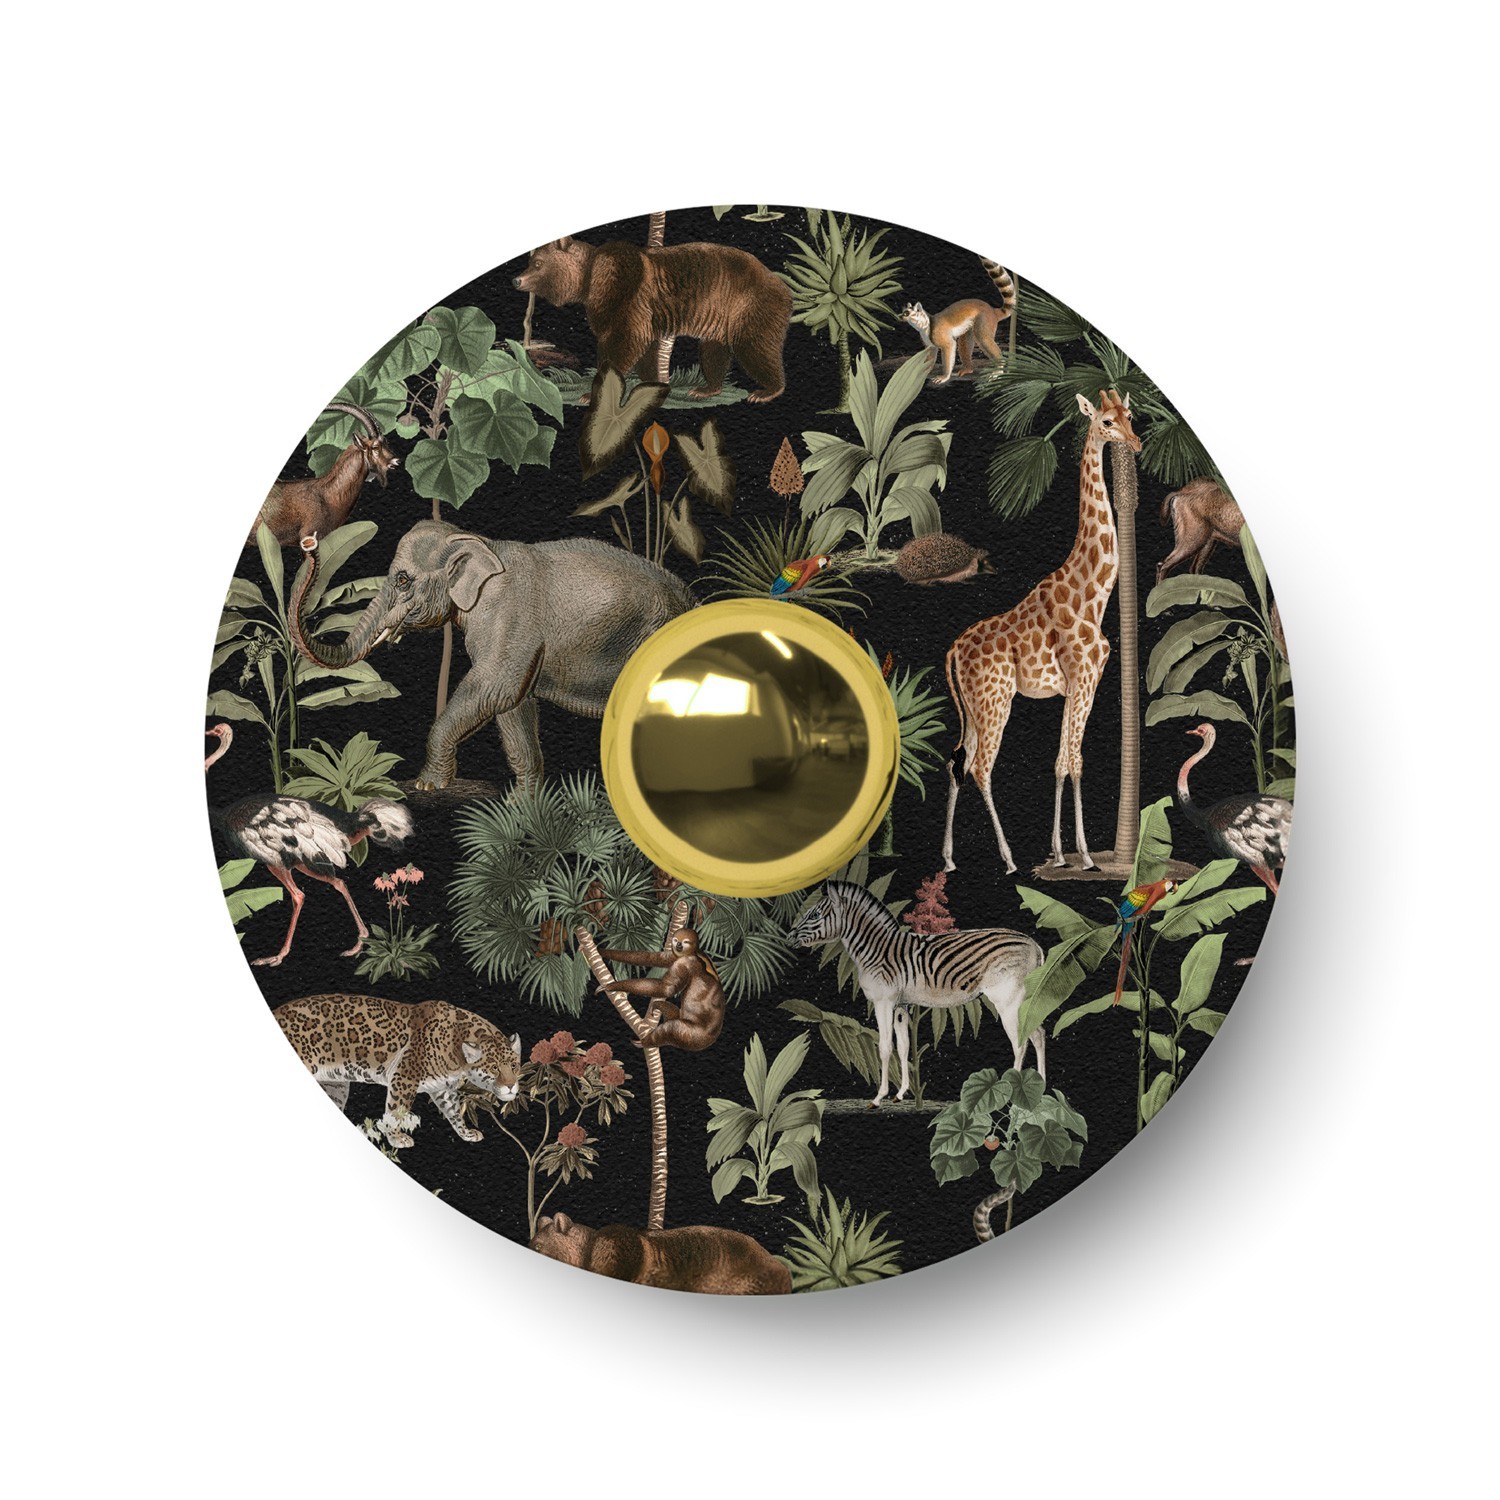 Stínidlo Ellepì mini so zvieratami z džungle "Wildlife Whispers", priemer 24 cm - vyrobené v Taliansku